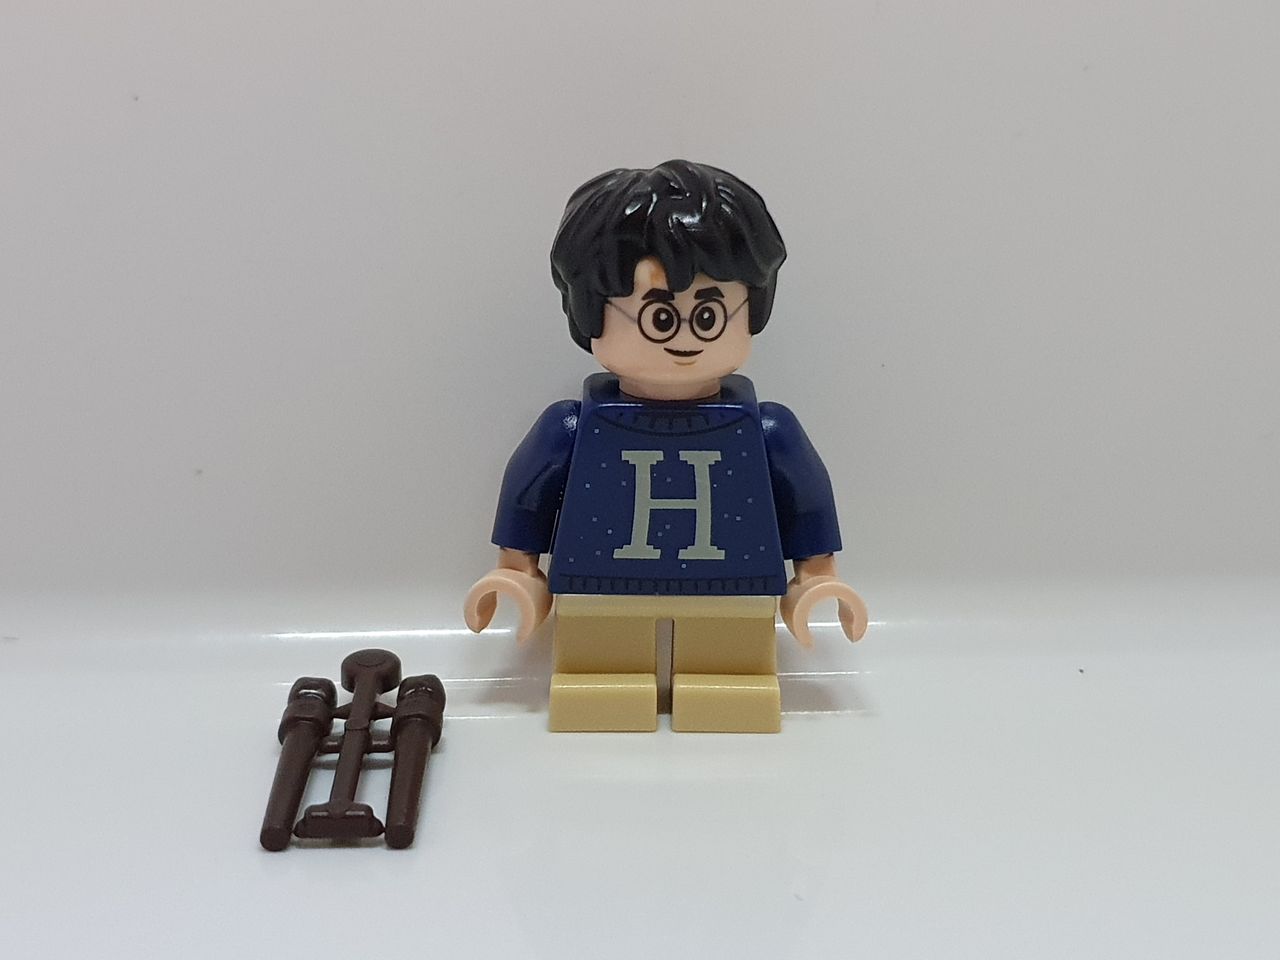 LEGO Harry Potter: O Castelo e os Campos de Hogwarts™, Idades 18+, 2660  Peças